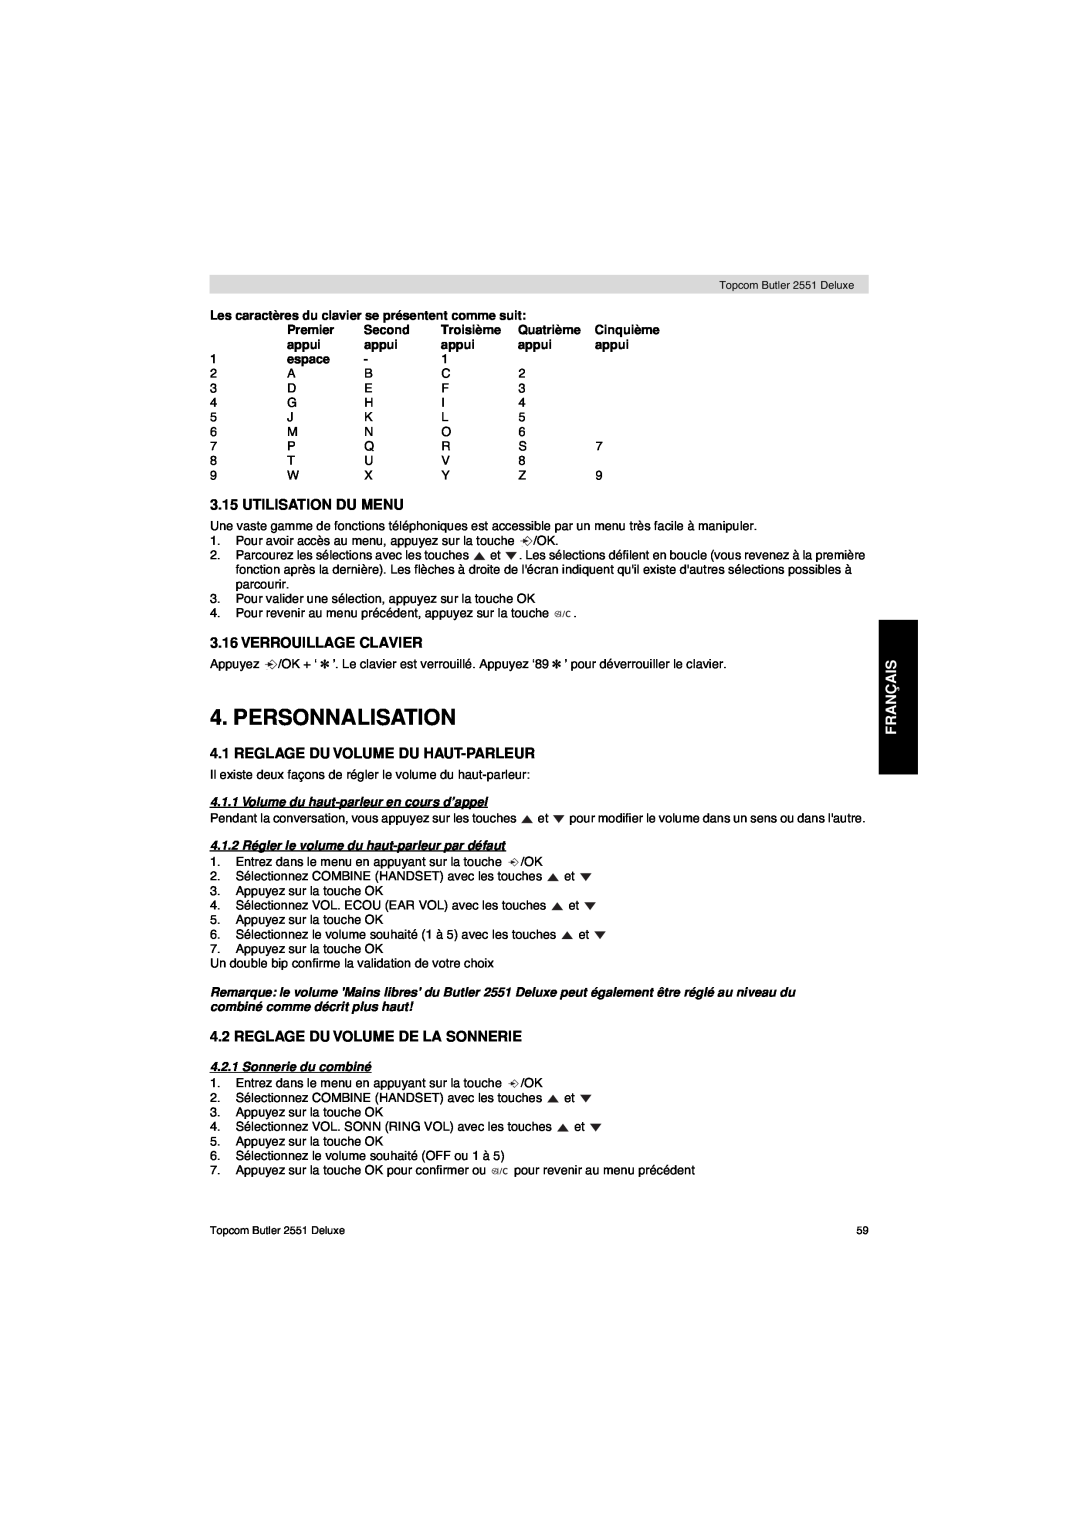 Topcom 2551 manual Personnalisation, Utilisation Du Menu, Verrouillage Clavier, Reglage Du Volume Du Haut-Parleur, Français 